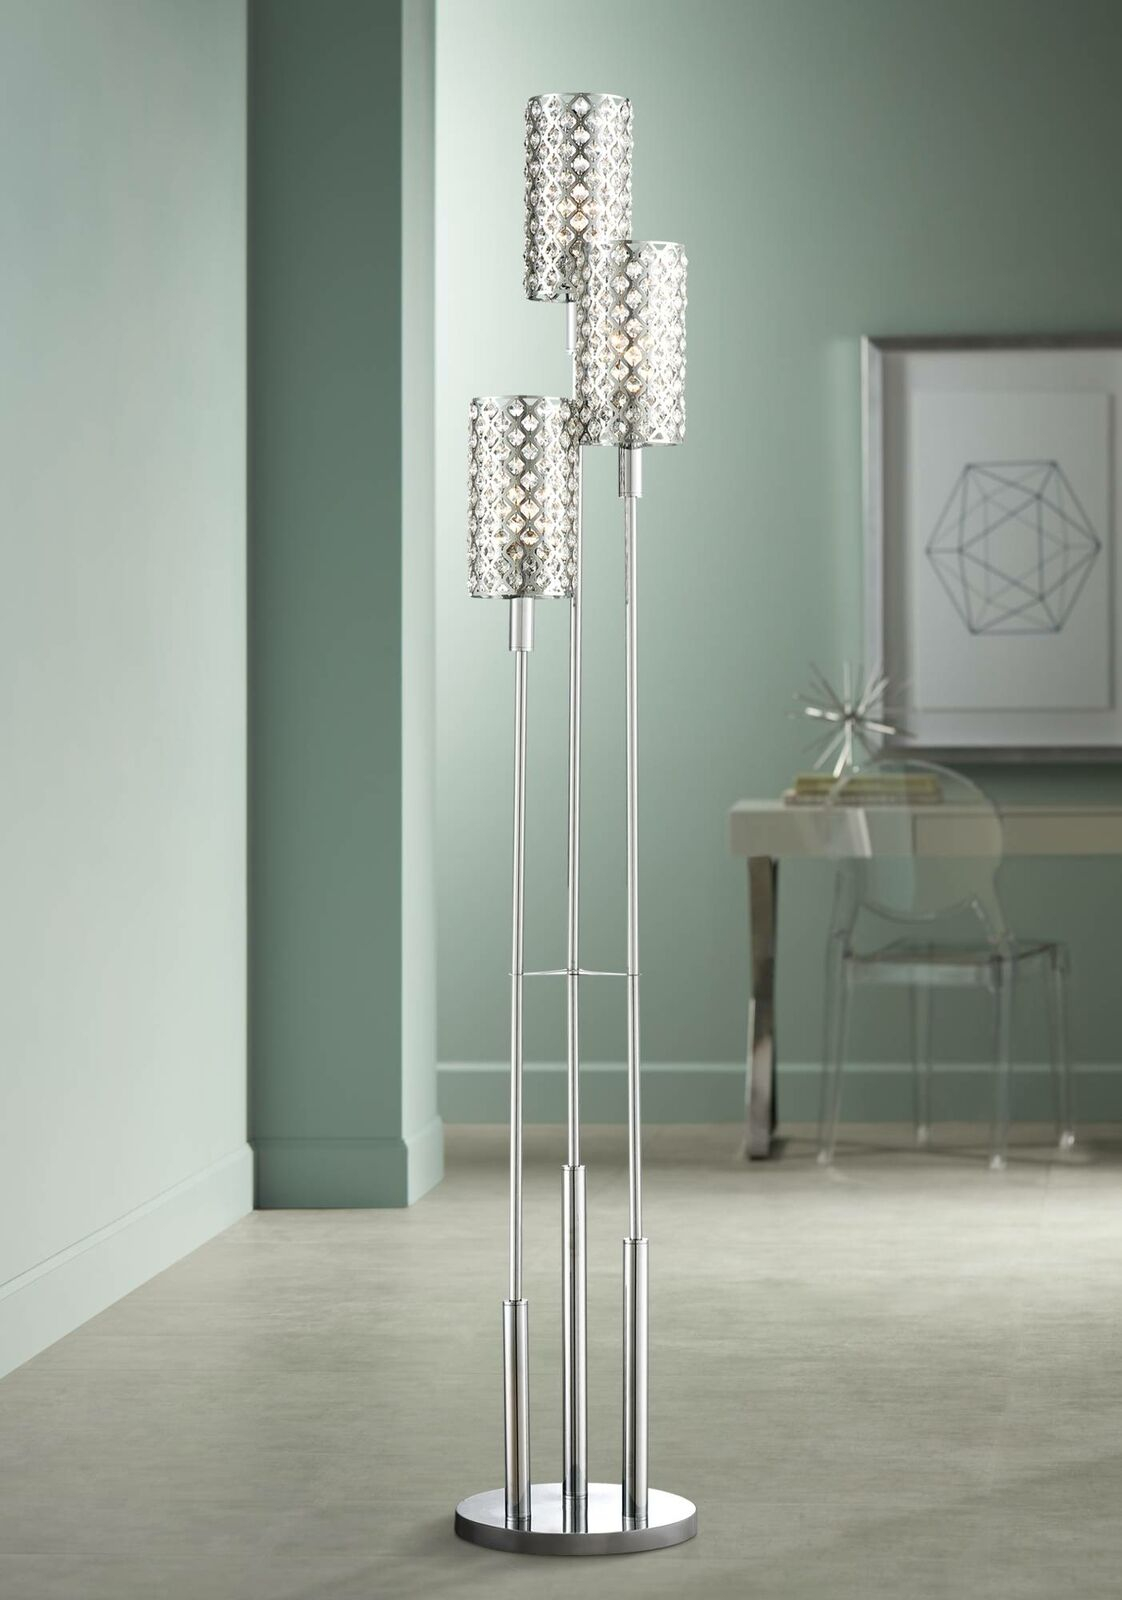 Modern Floor Lamp 3 Light Chrome Glitz Crystal For Living Room Bedroom Uplight intended for size 1122 X 1600